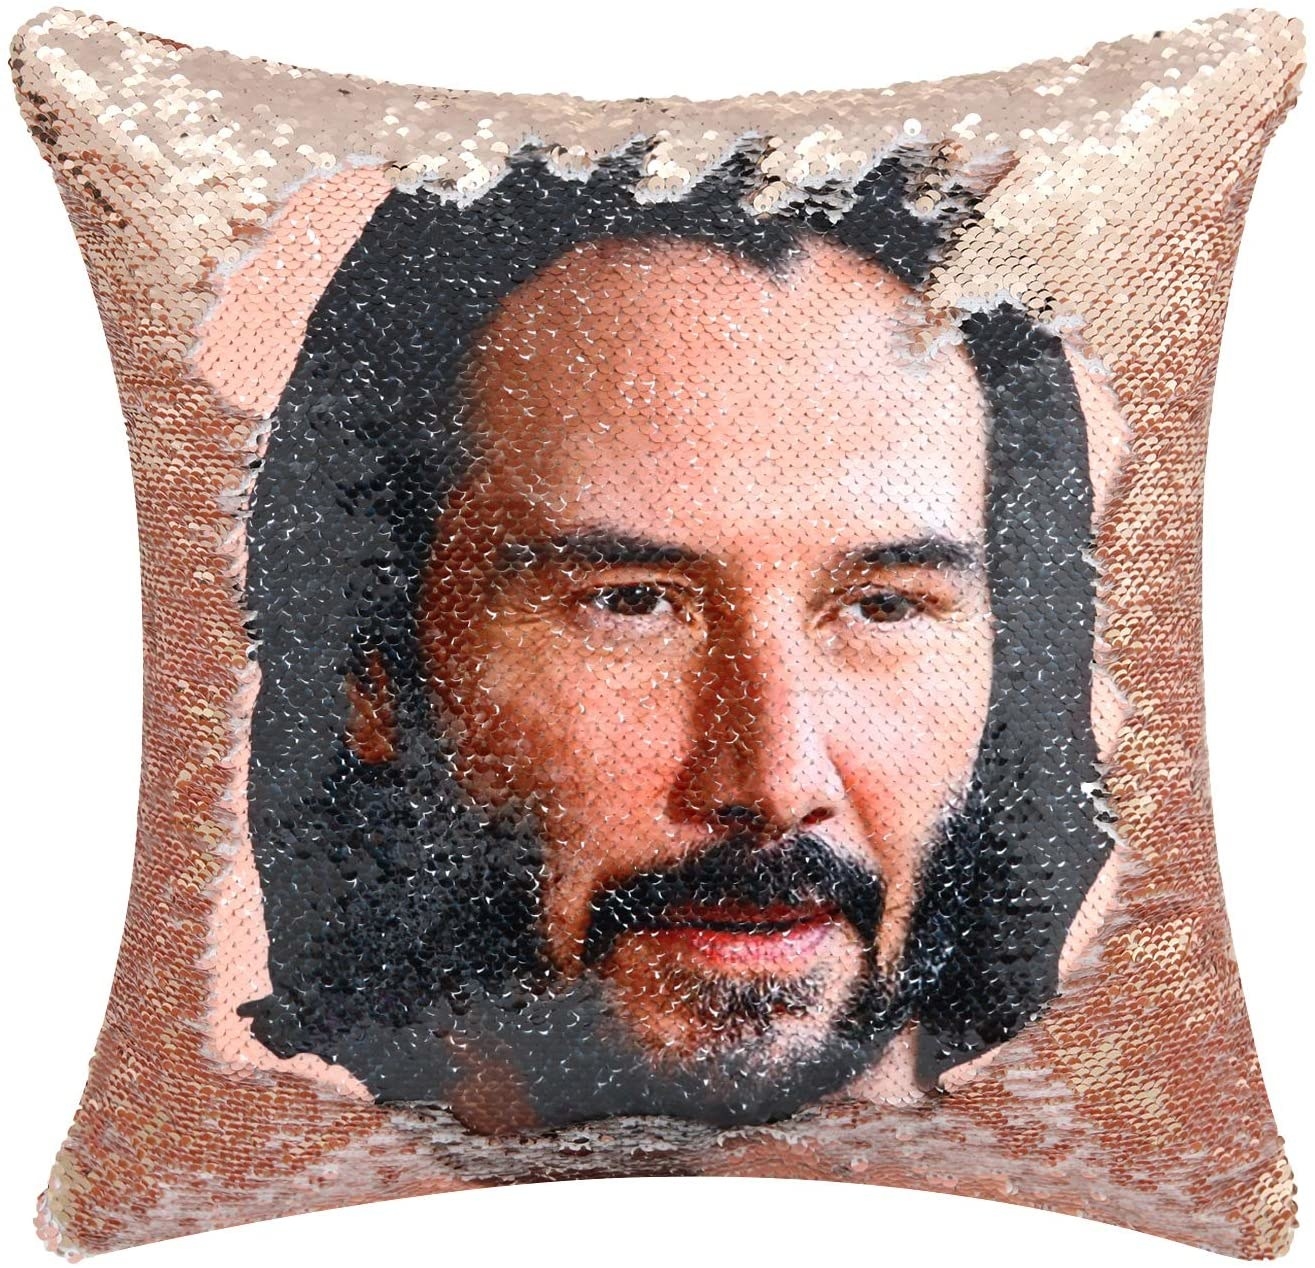 Keanu Reeves pillow